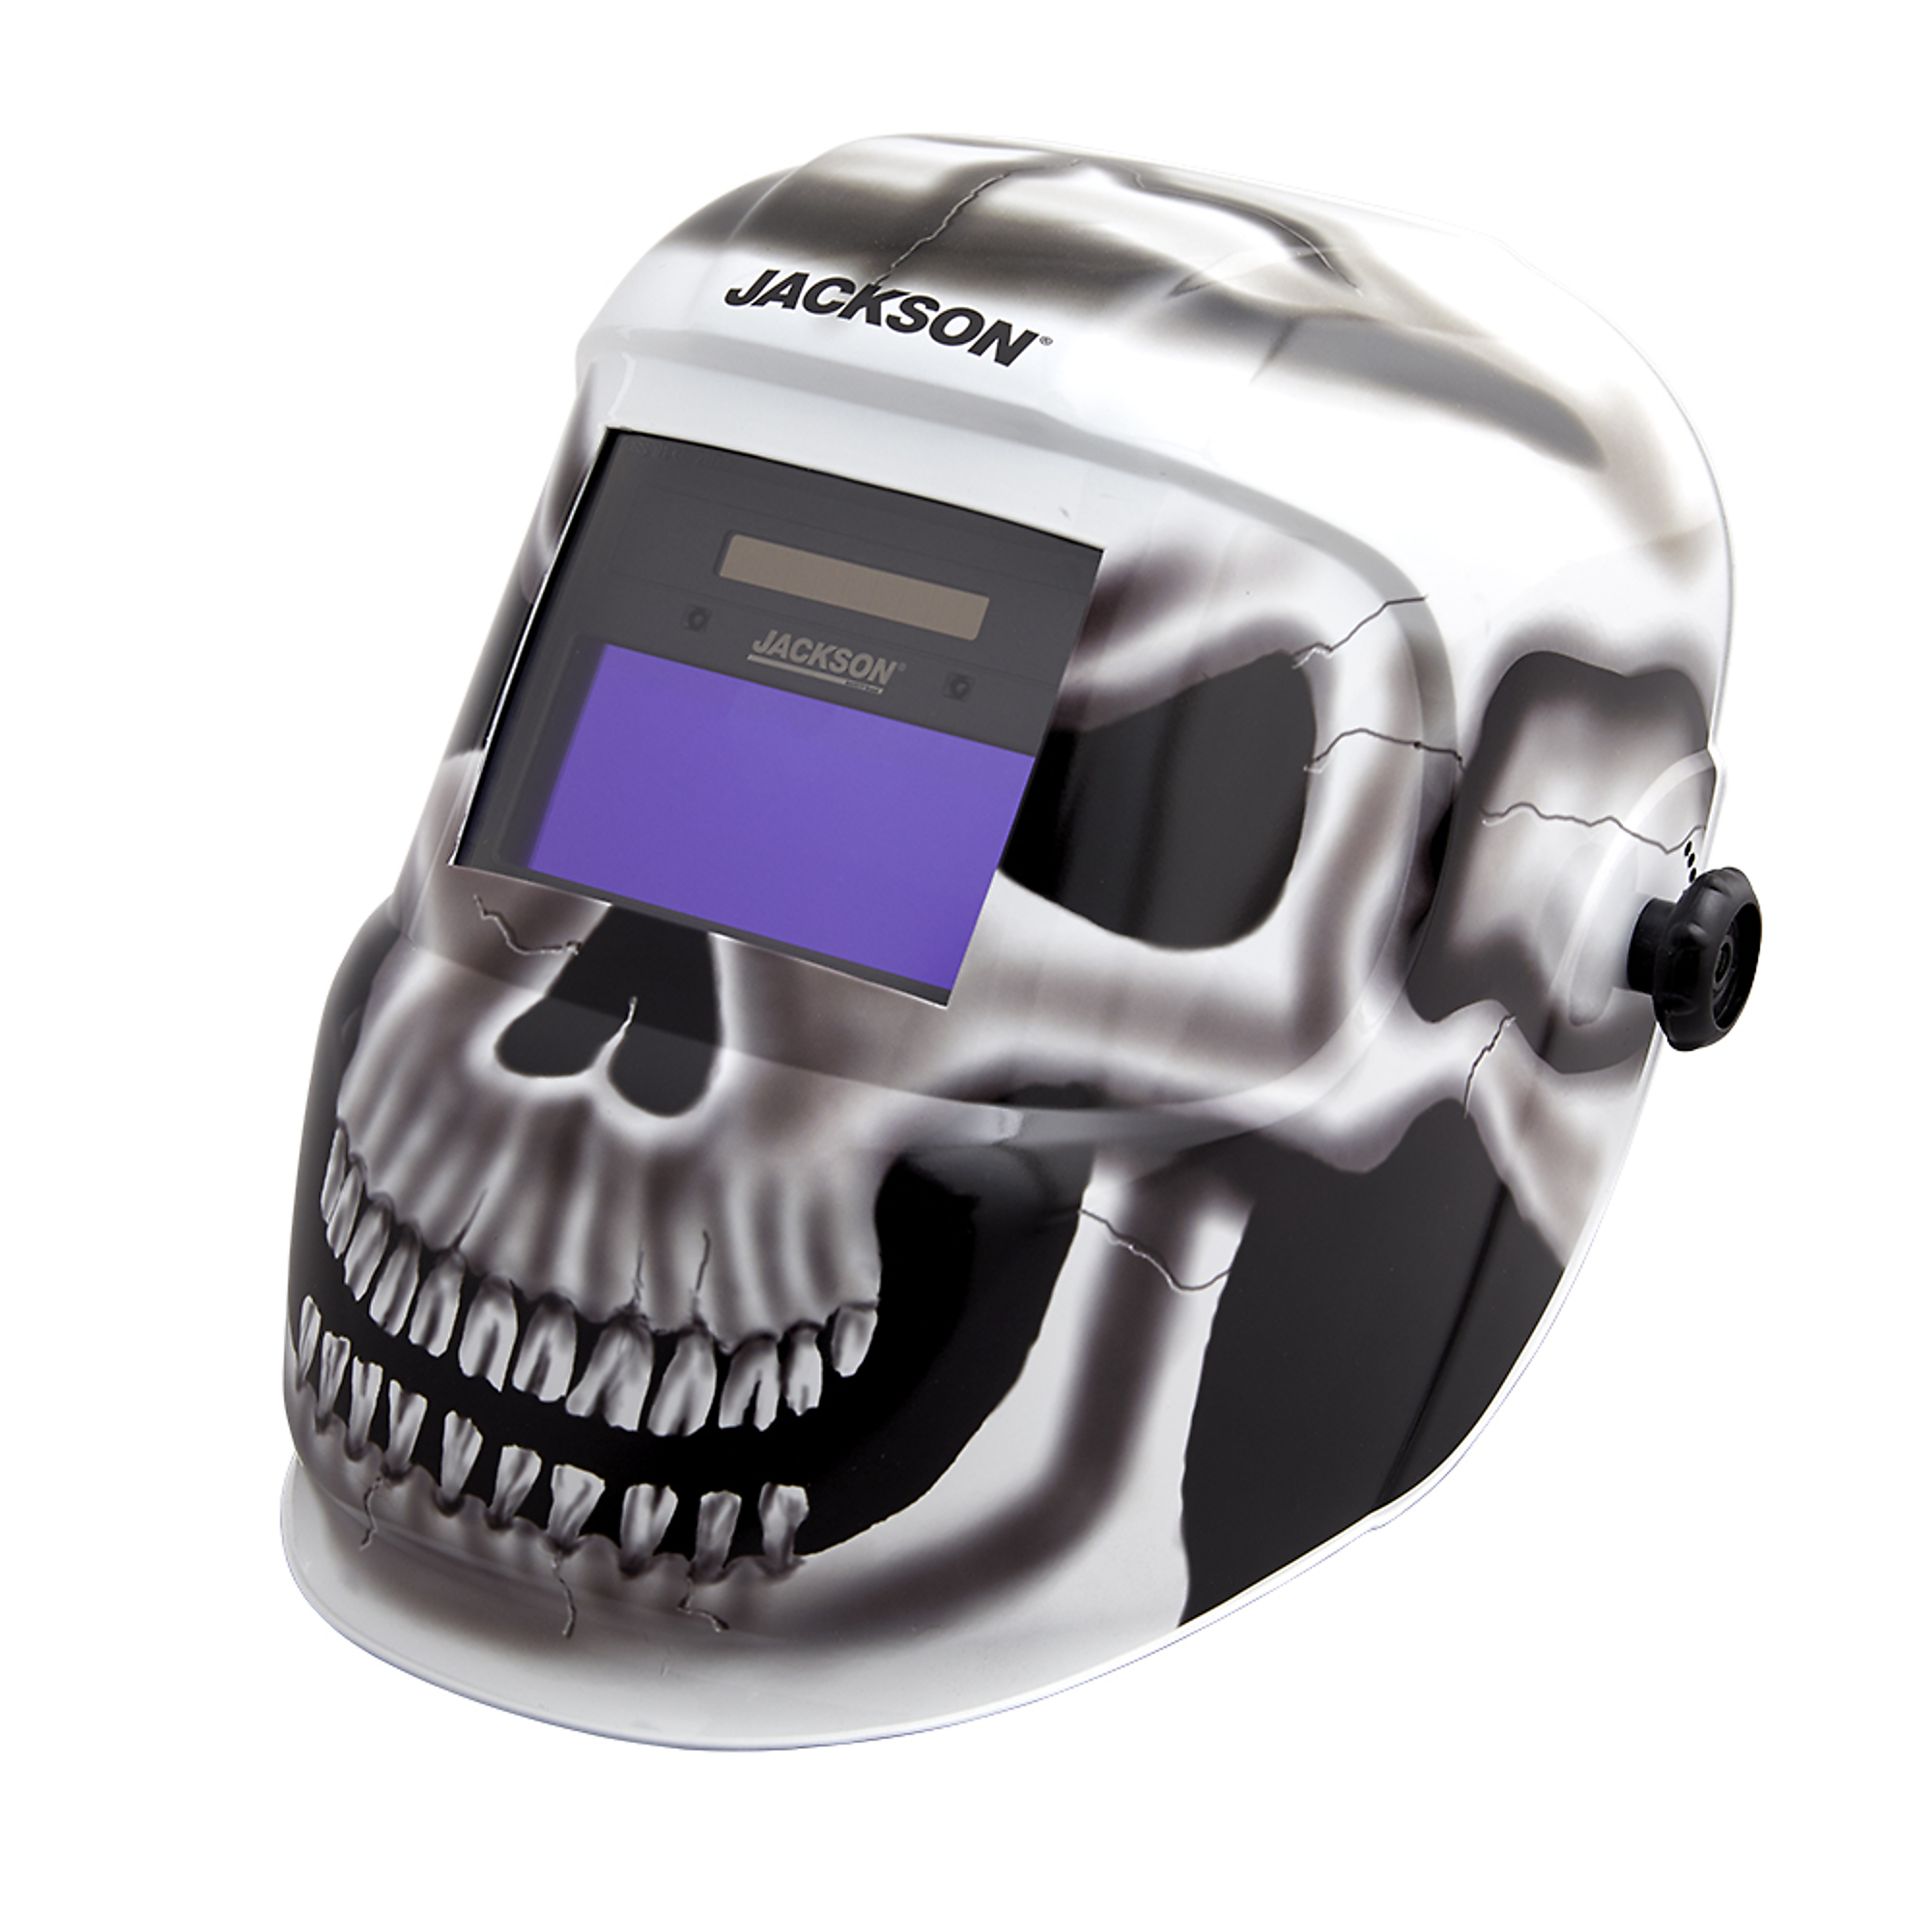 Jackson Safety, Gray Matter Graphic Premium ADF Welding Helmet, Auto Darkening, Switch Time 1/25,000 sec., Grind Mode, Model 47102